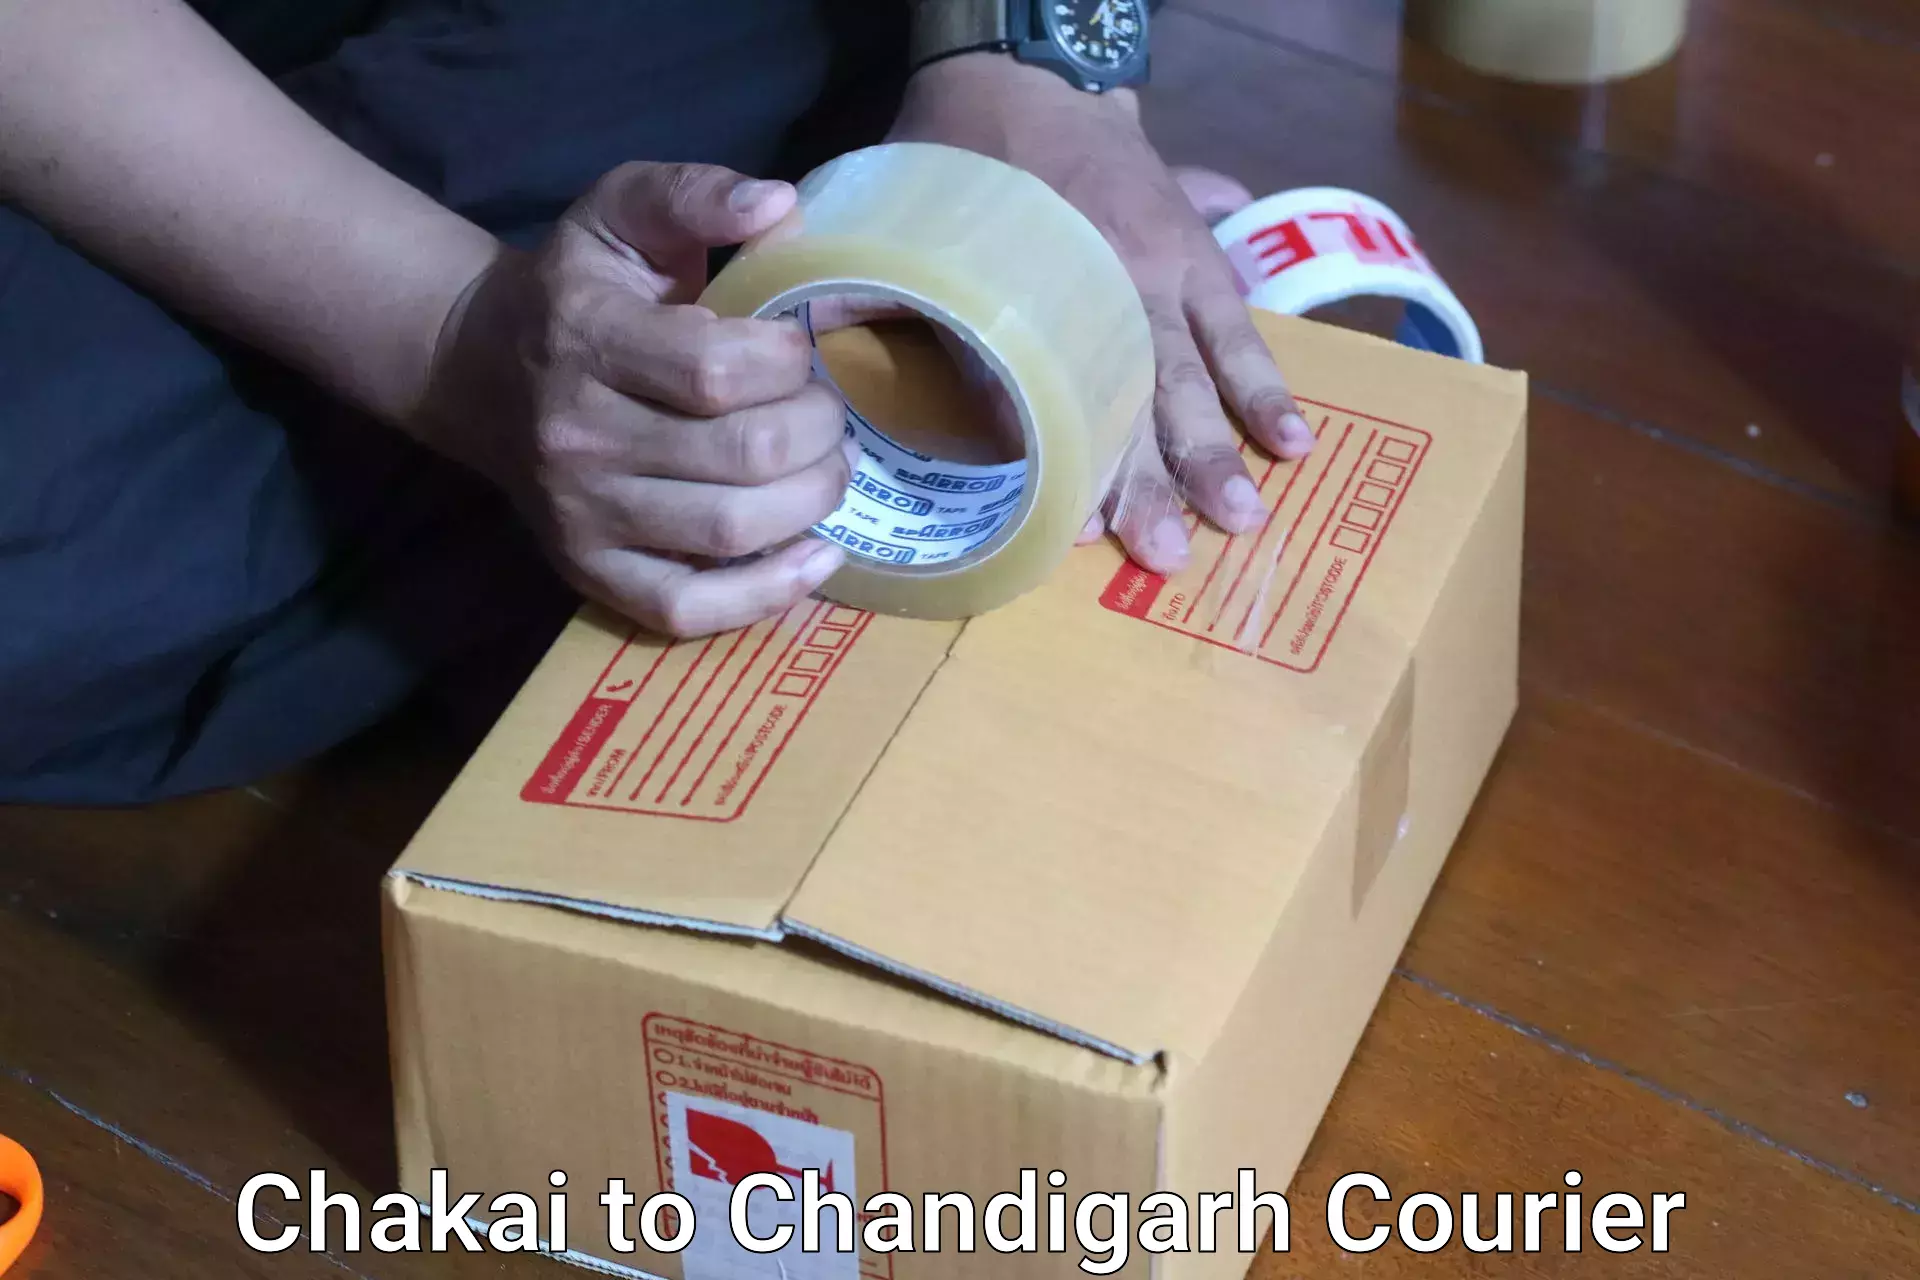 Luggage transport company Chakai to Chandigarh